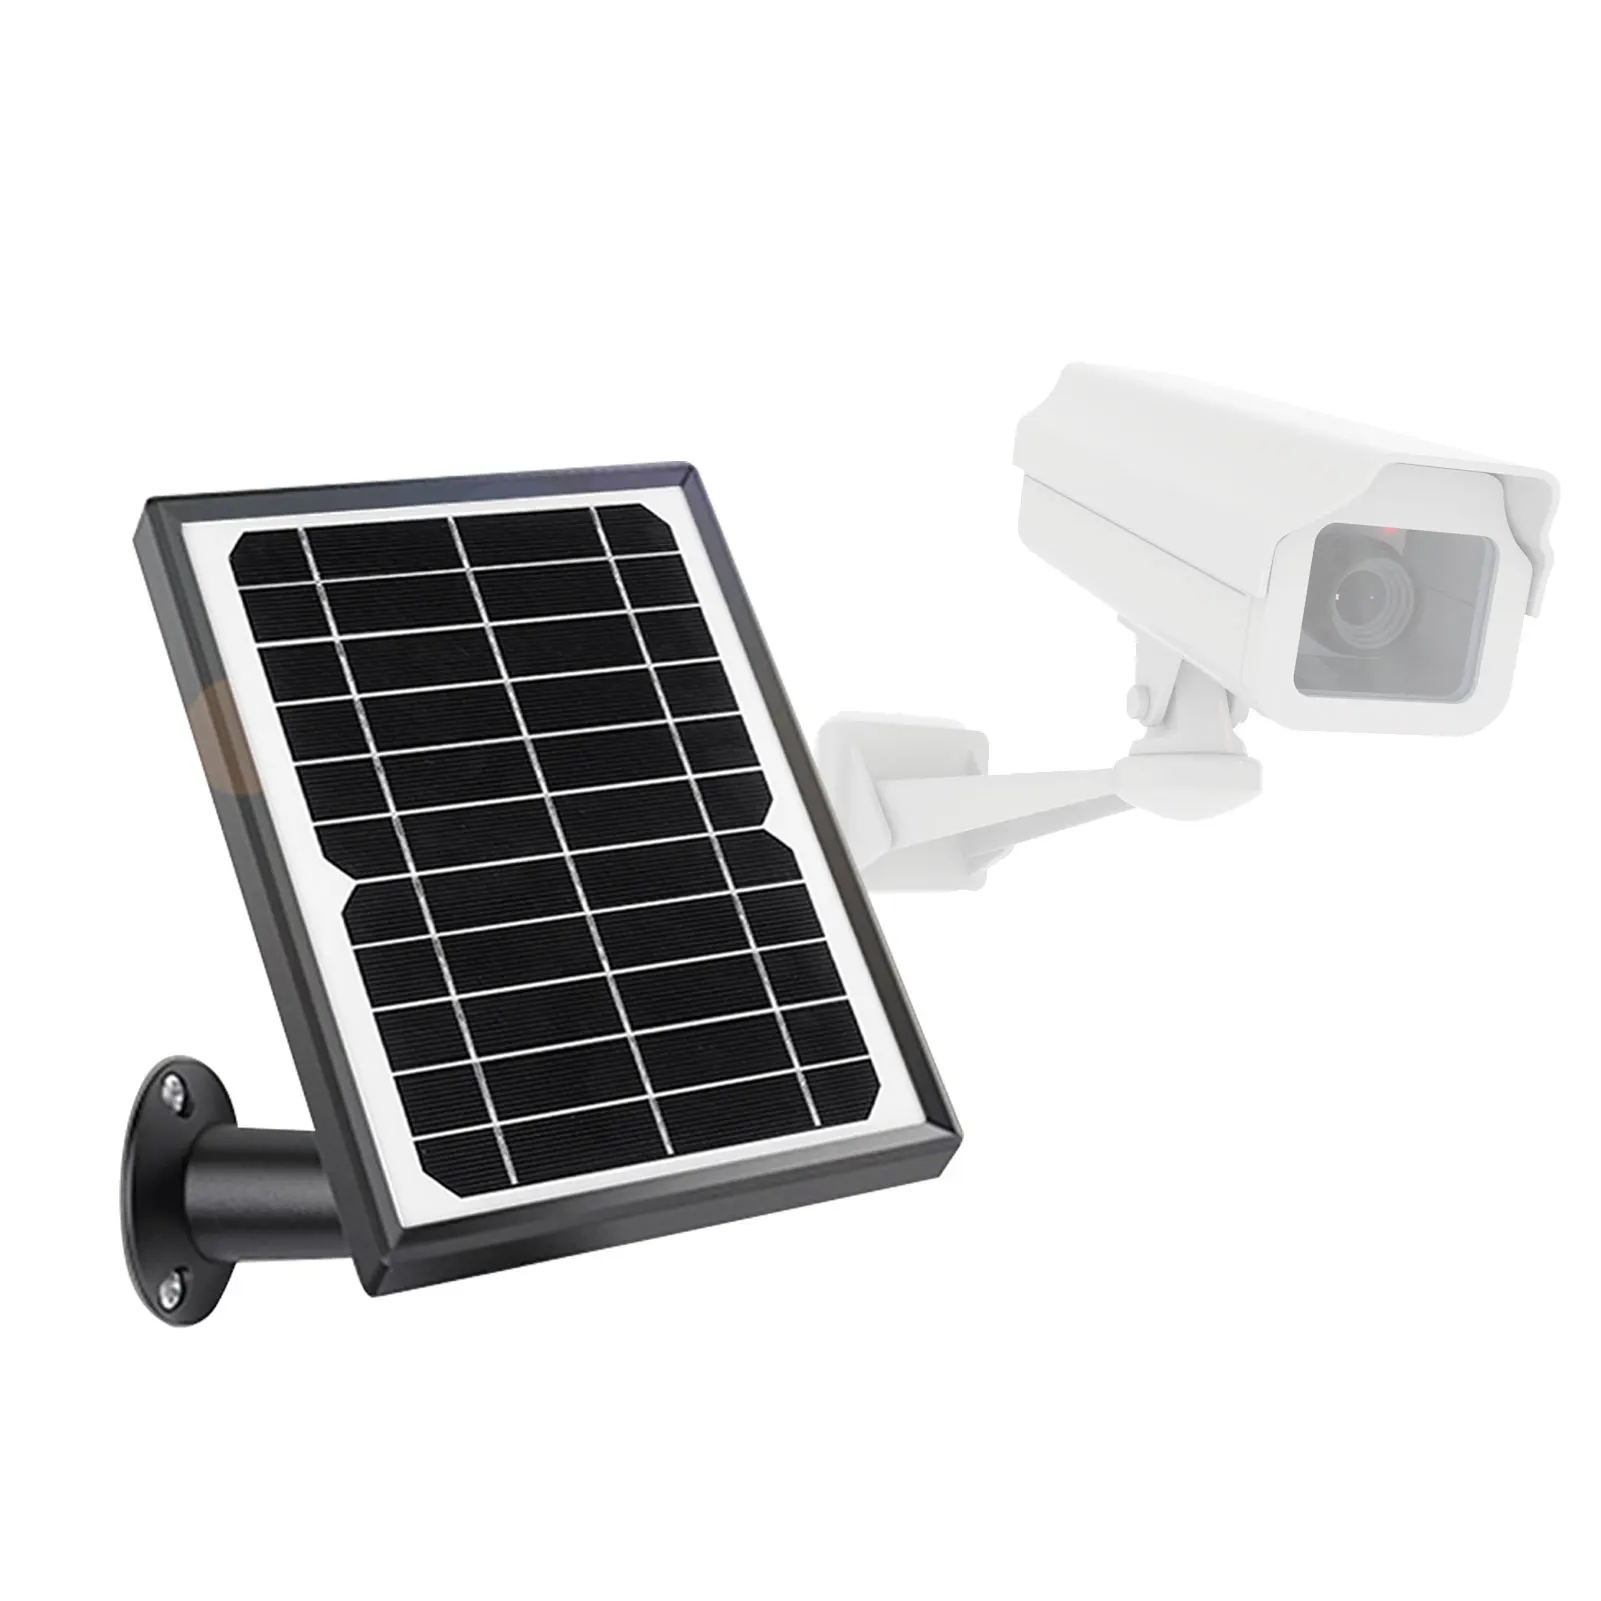 Bateria Solar Trickle Carregador De Painel Solar Carregador De Bateria, Painel Solar Carregador De Bateria Para Carro, Barco, Automóvel Motocicleta